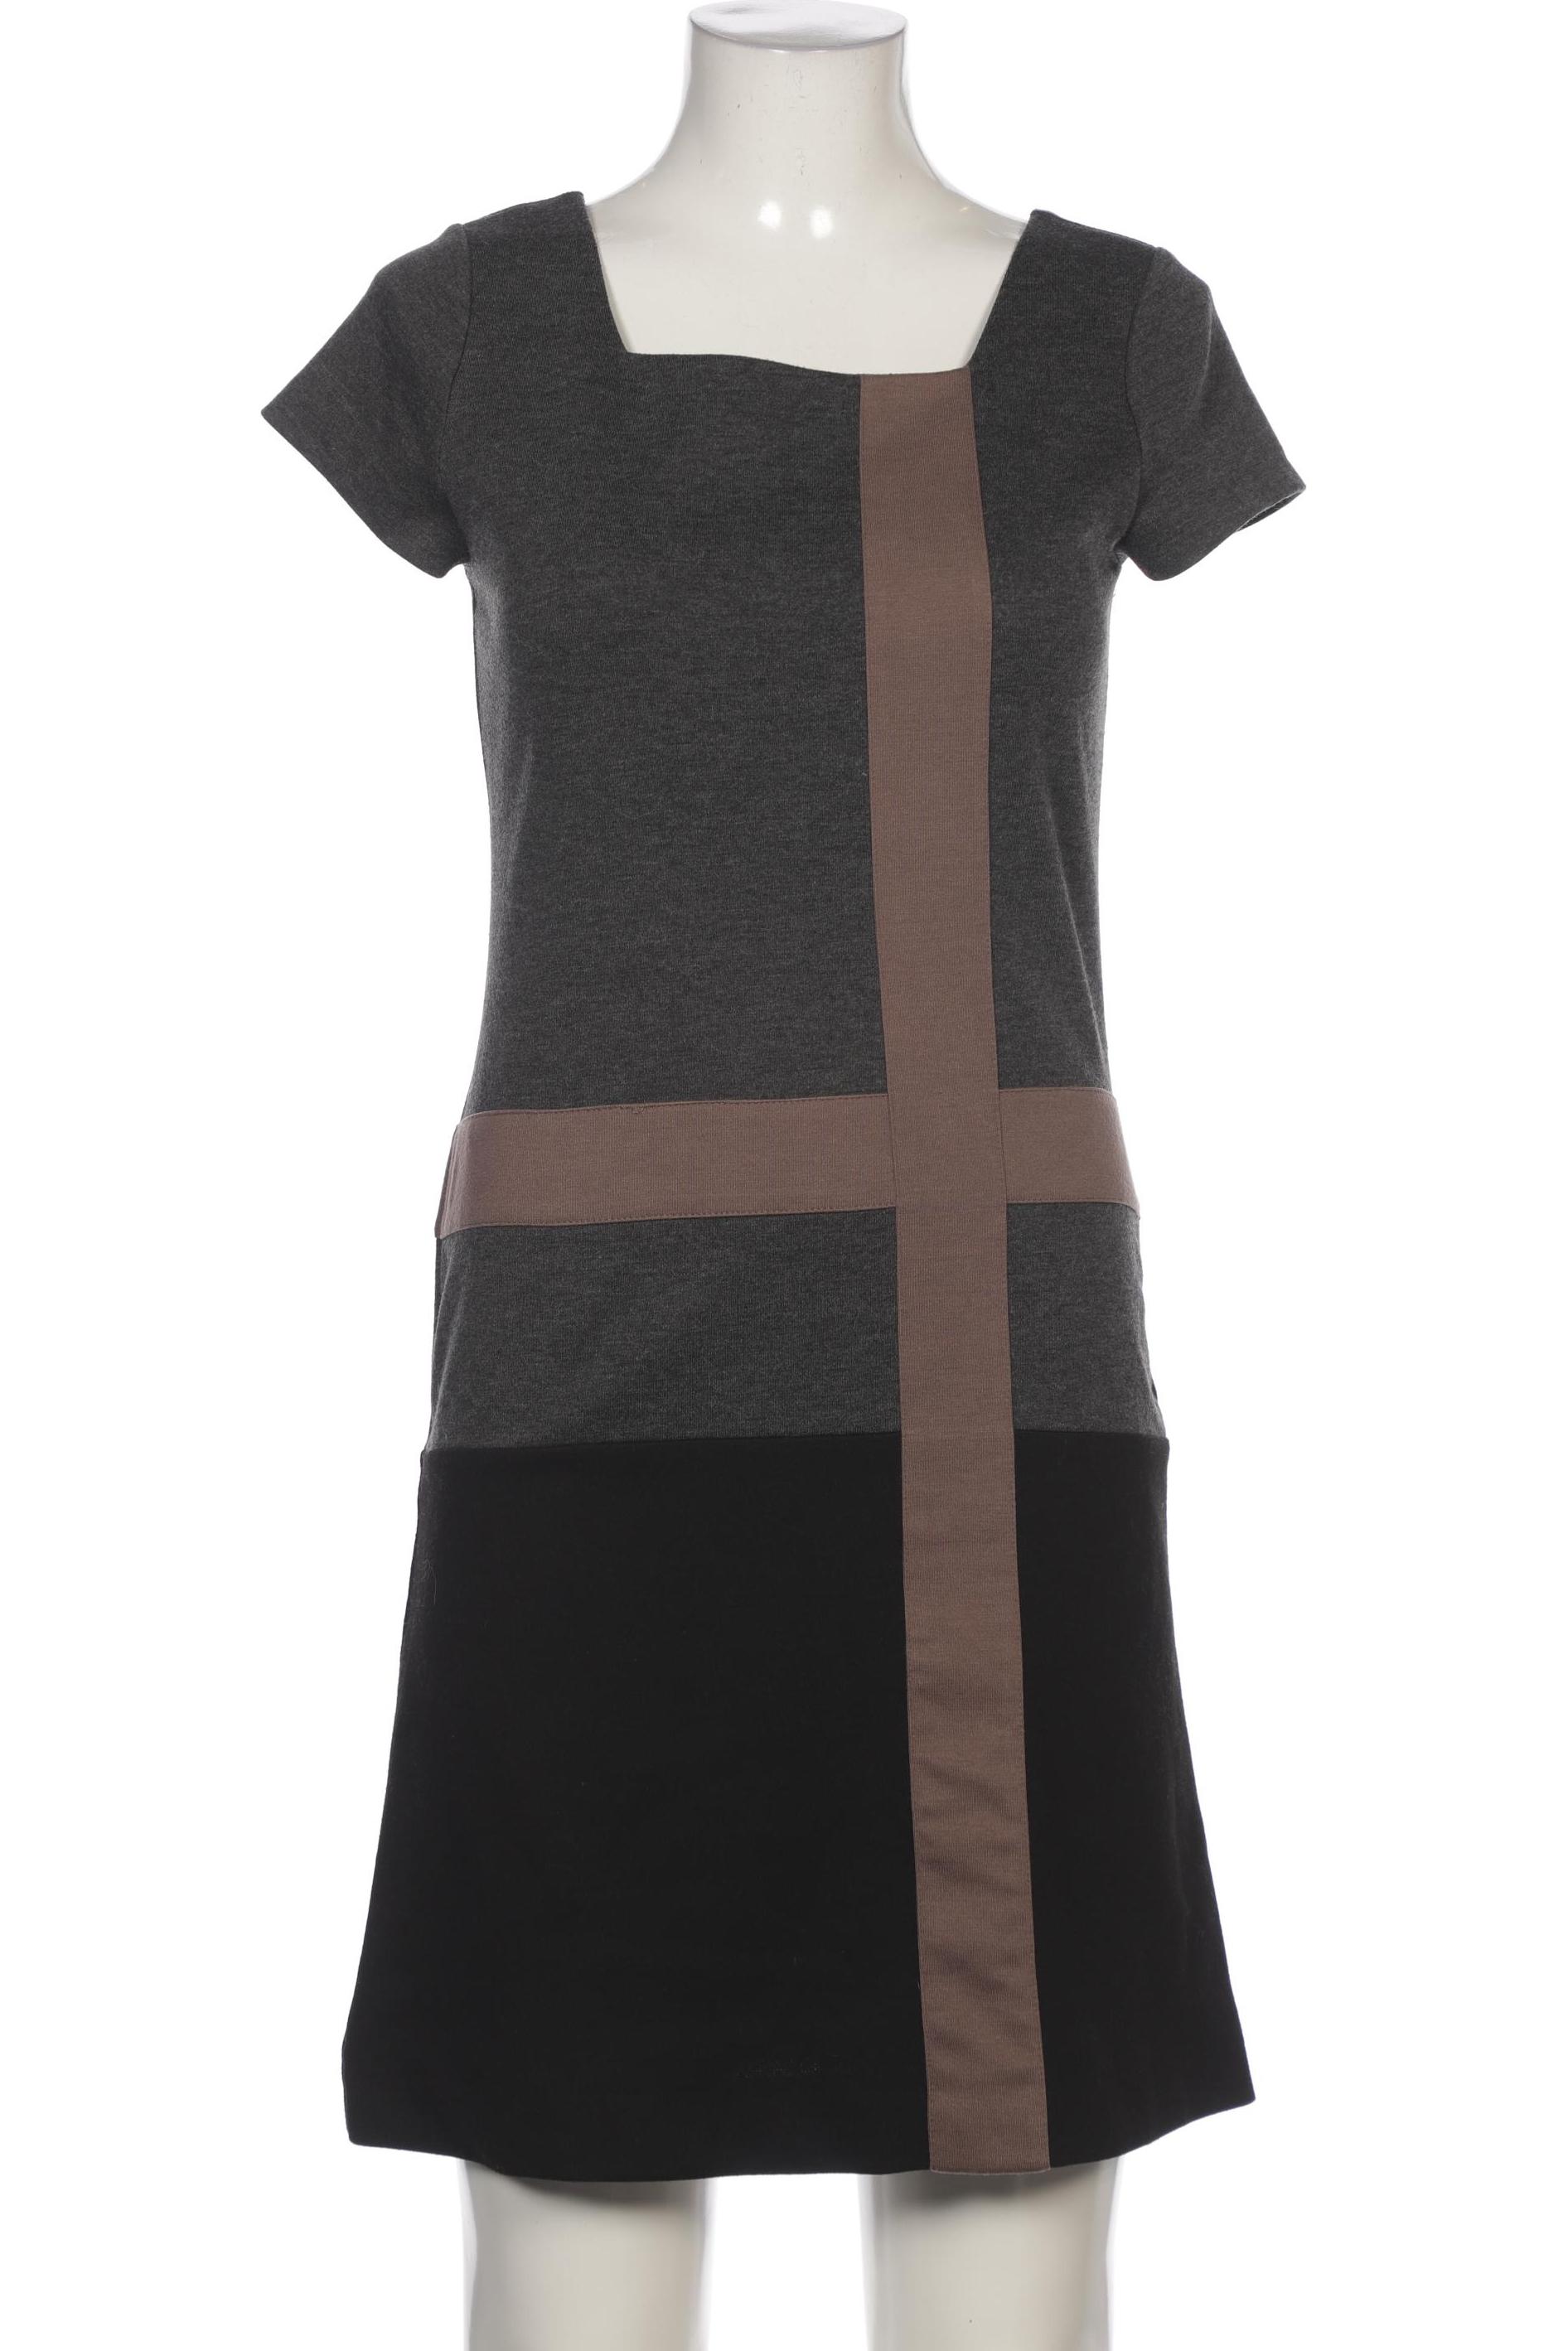 Montego Damen Kleid, grau, Gr. 38 von montego